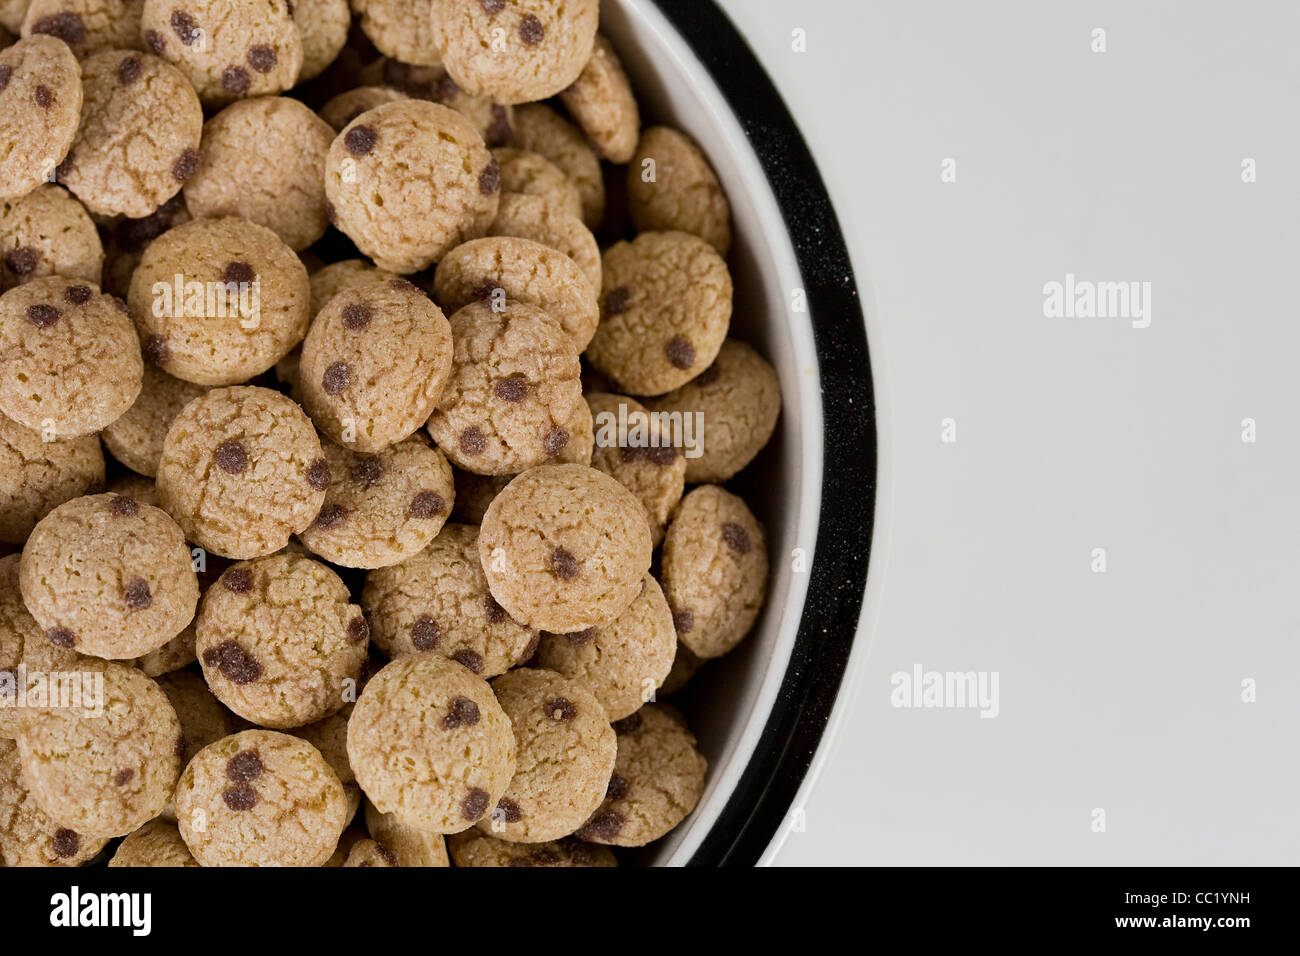 Cookie Crisp breakfast cereal. Stock Photo